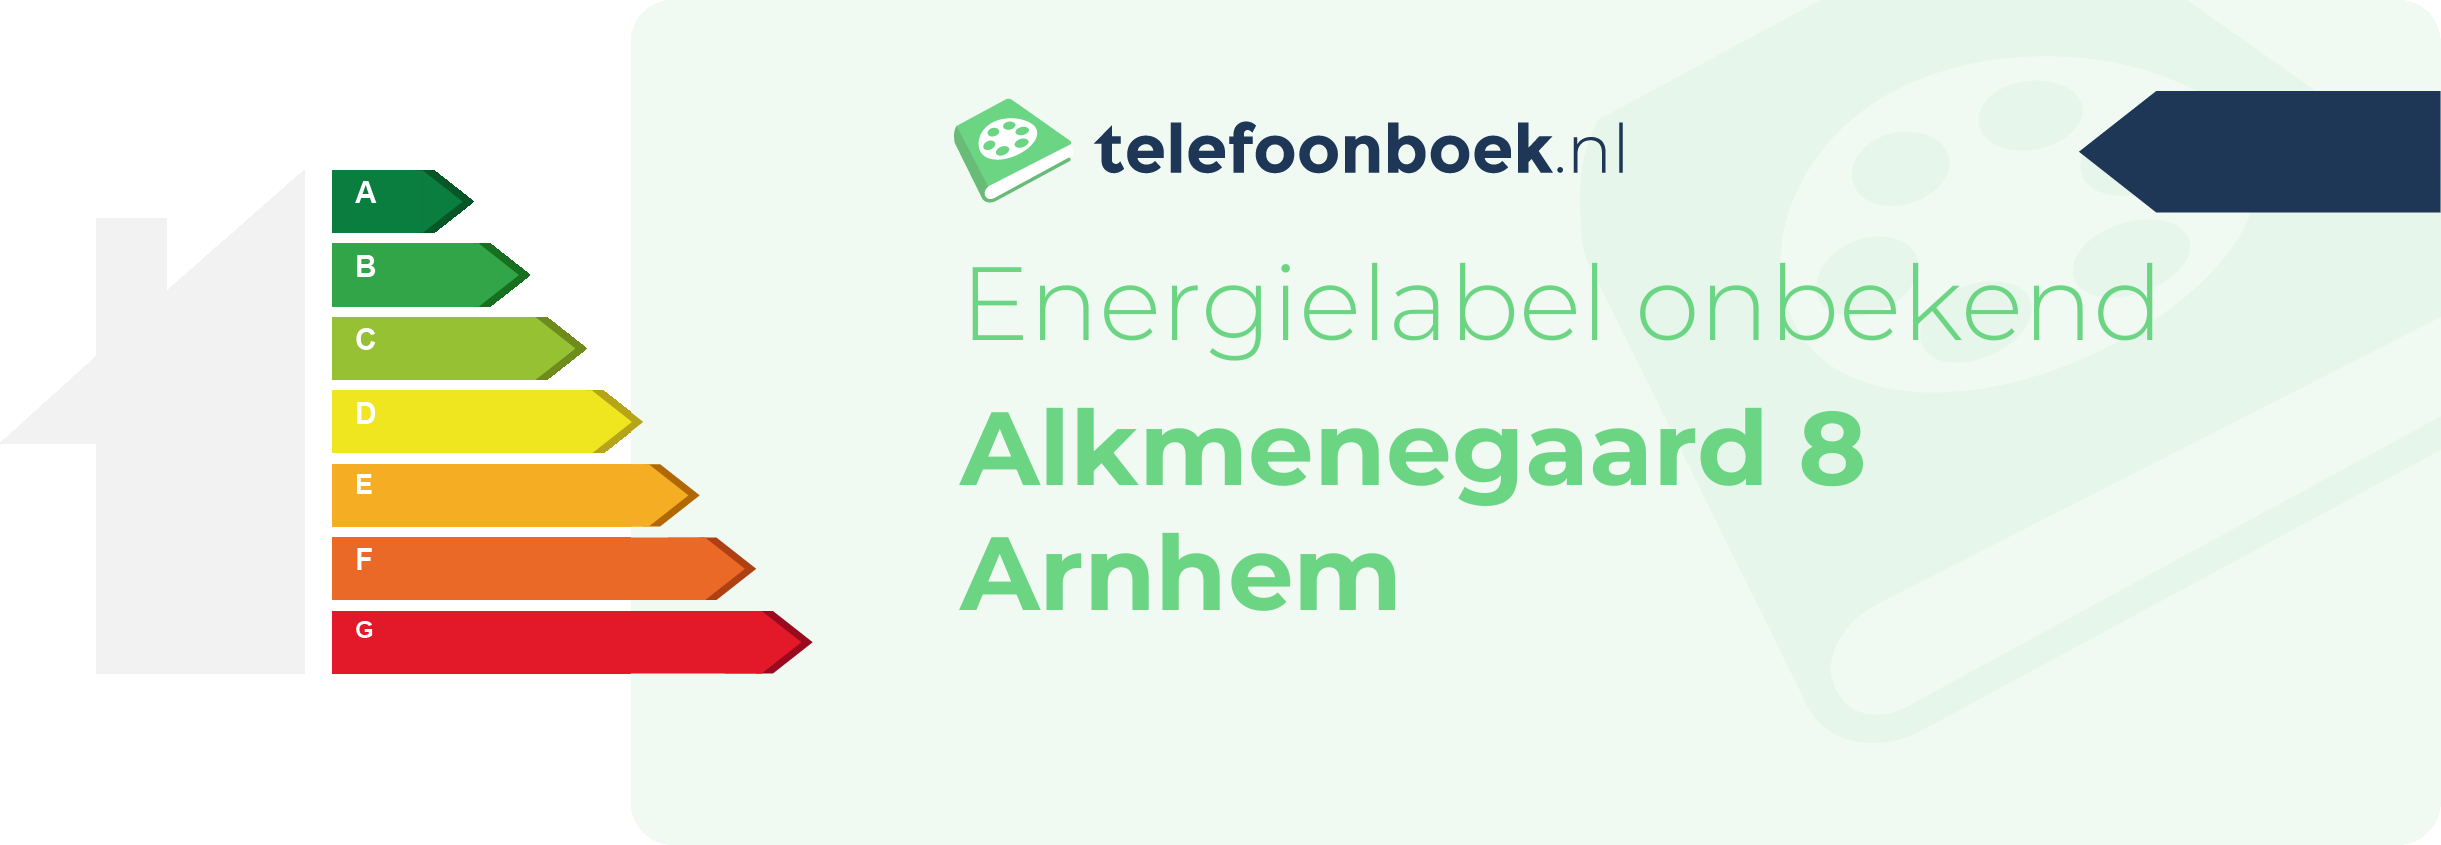 Energielabel Alkmenegaard 8 Arnhem